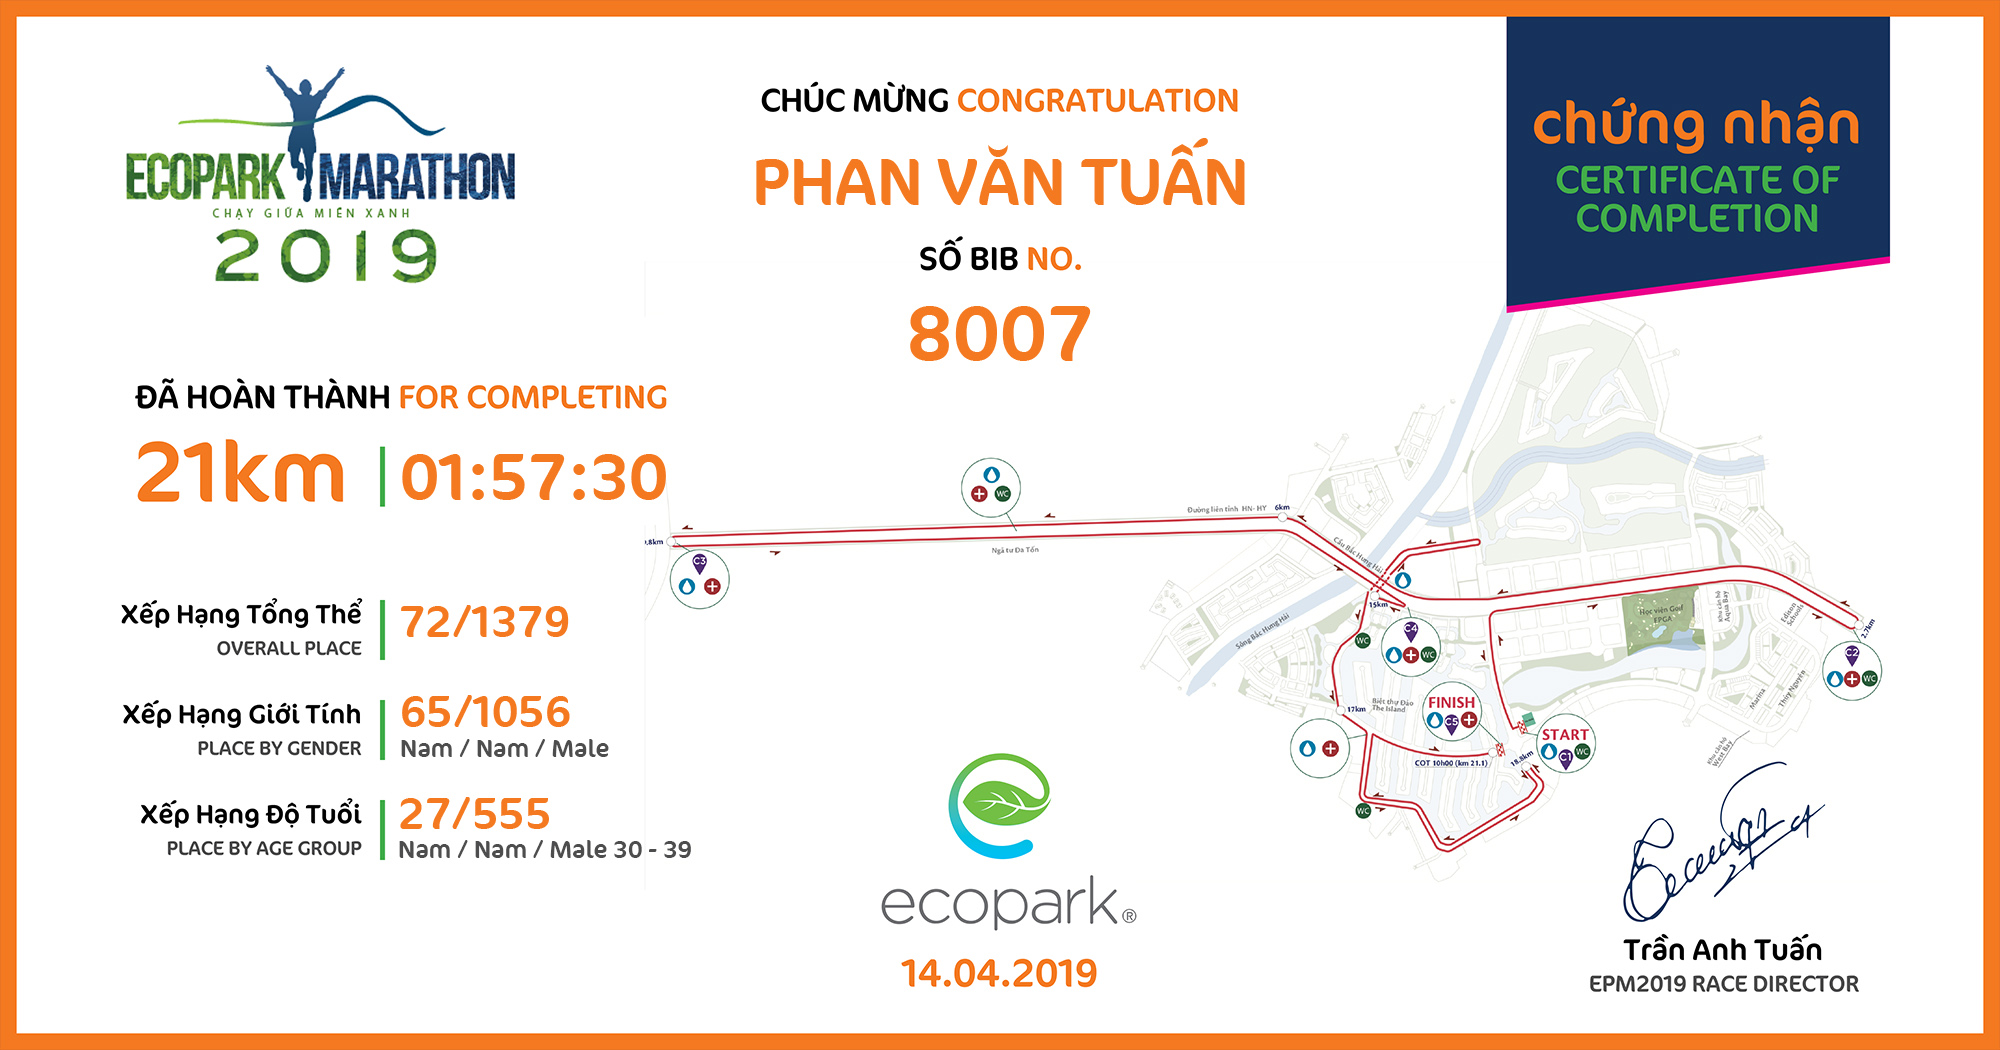 8007 - Phan Văn Tuấn